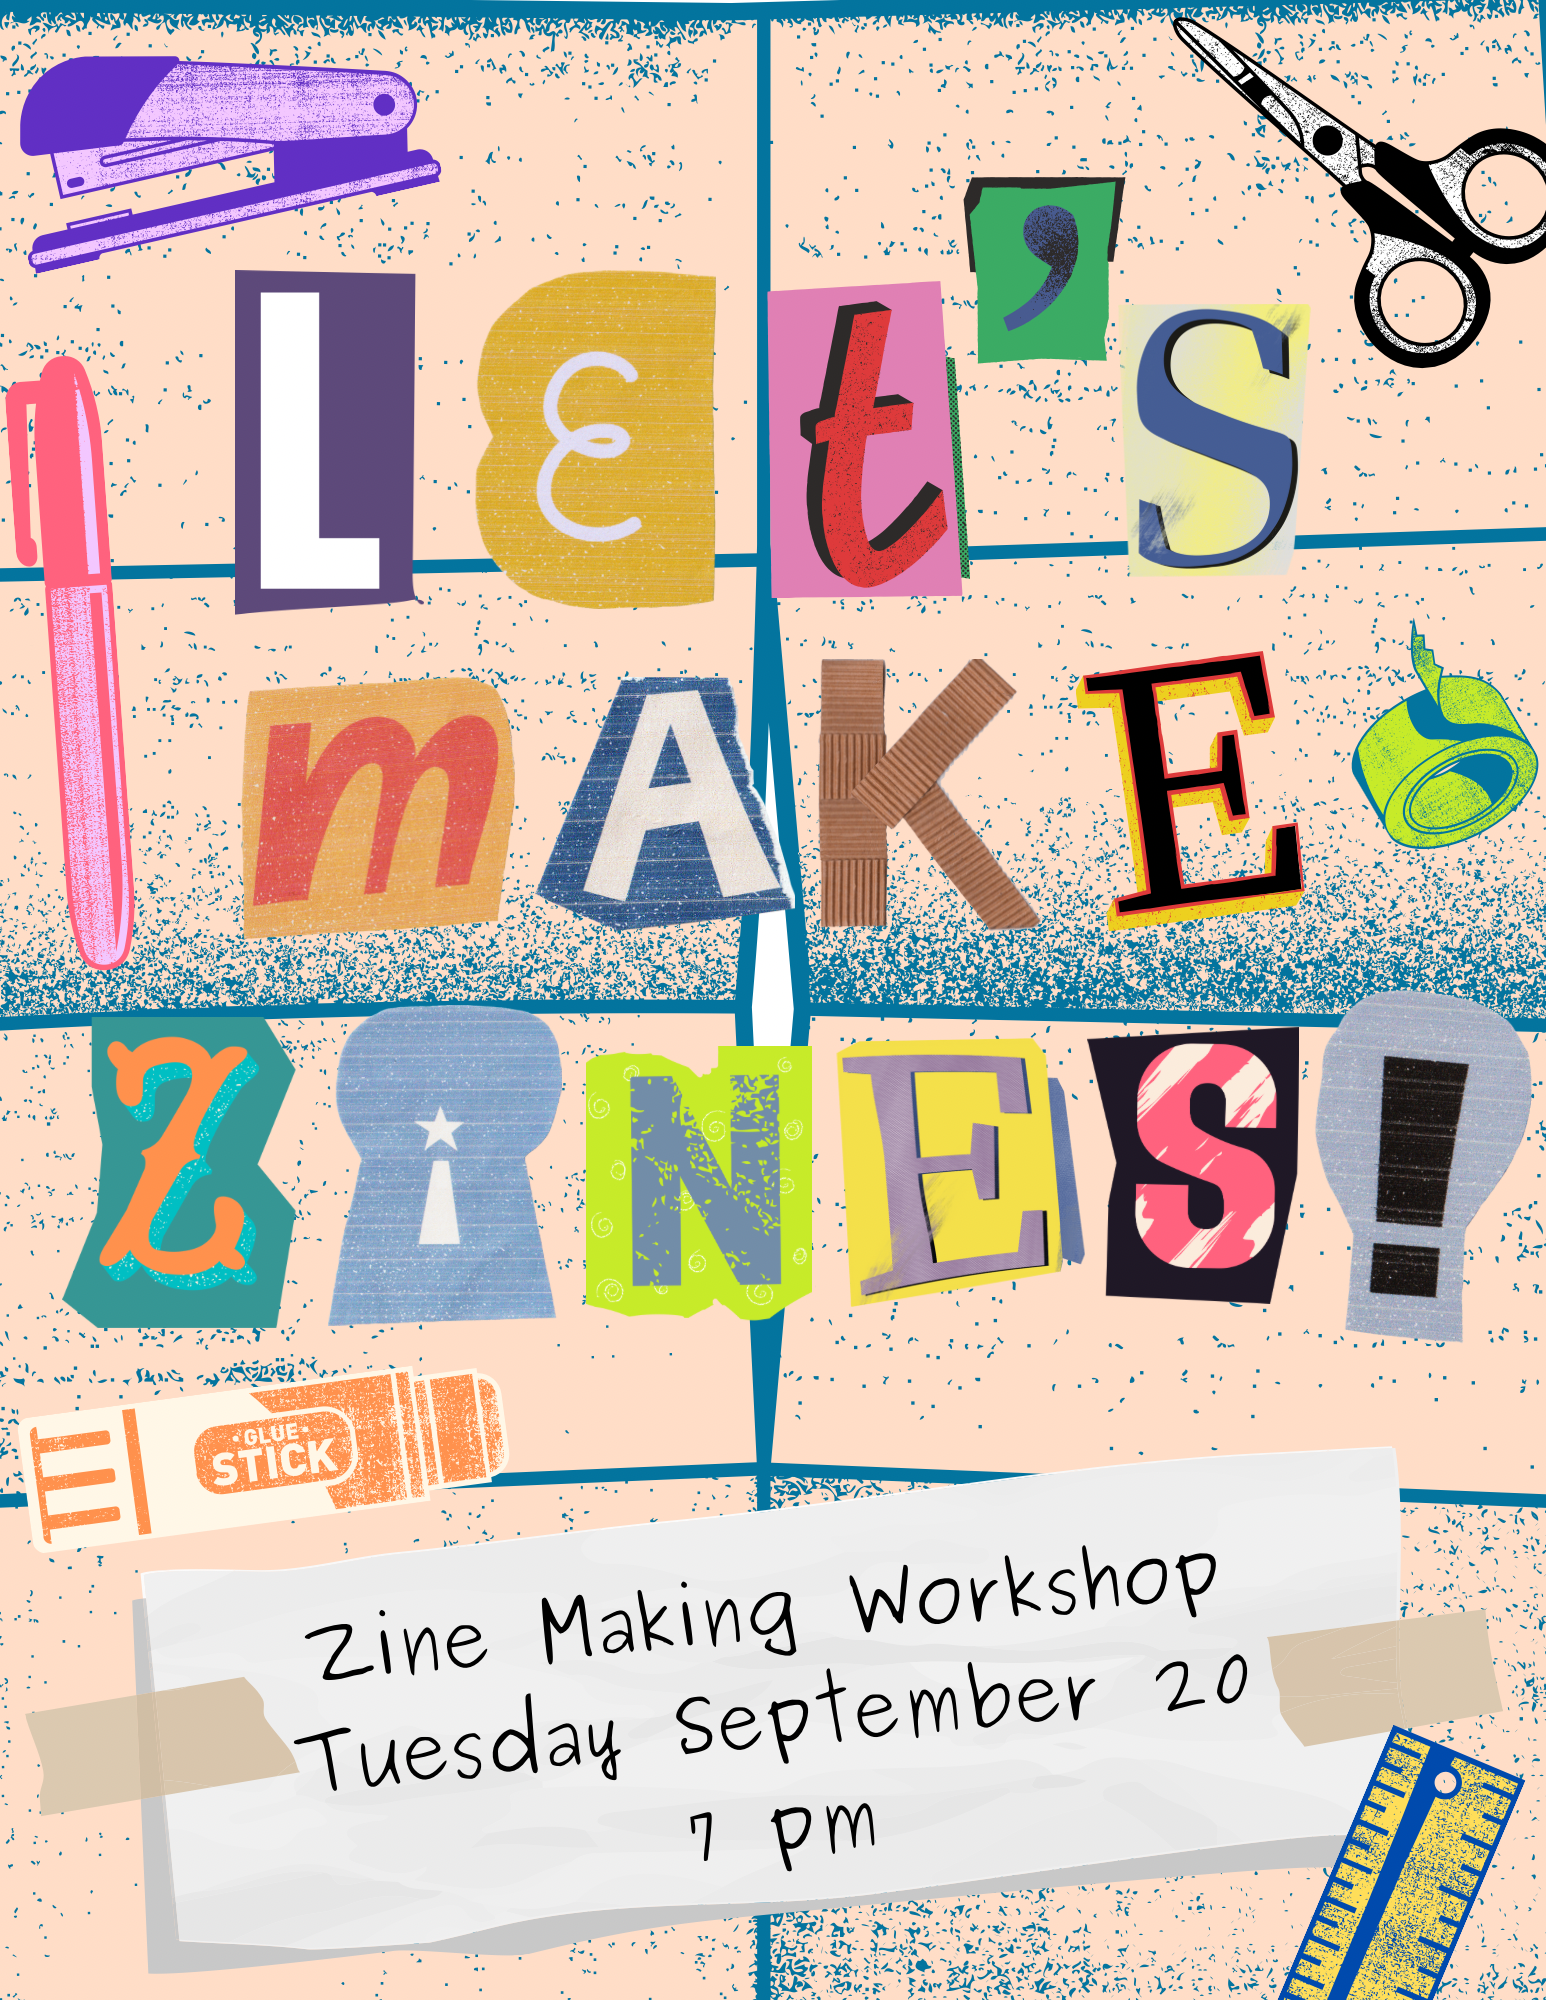 Zine Making Workshop info